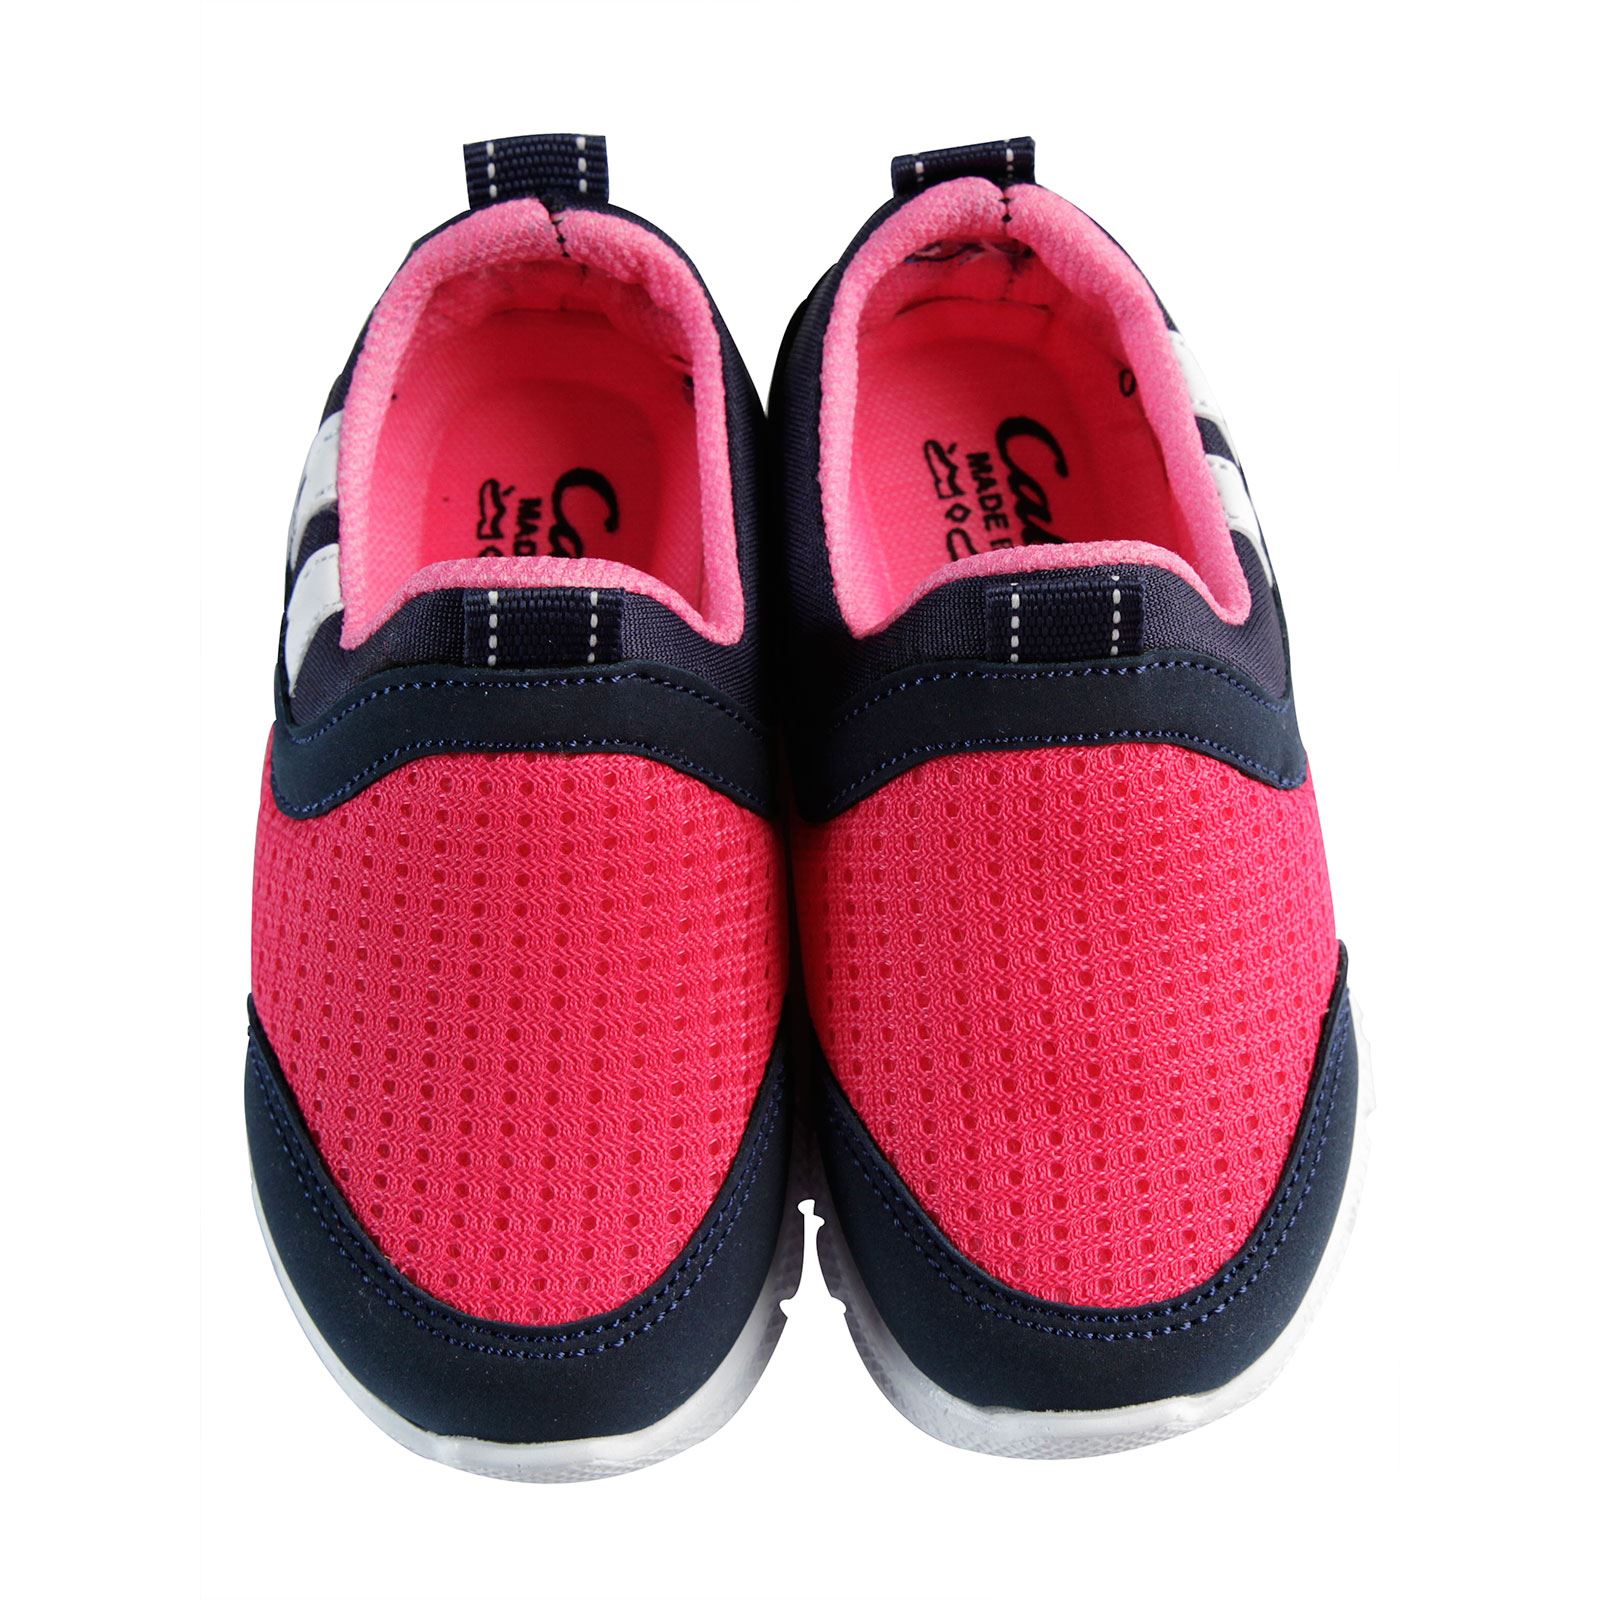 Callion Kız Çocuk Spor Ayakkabı 22-25 Numara Fuşya